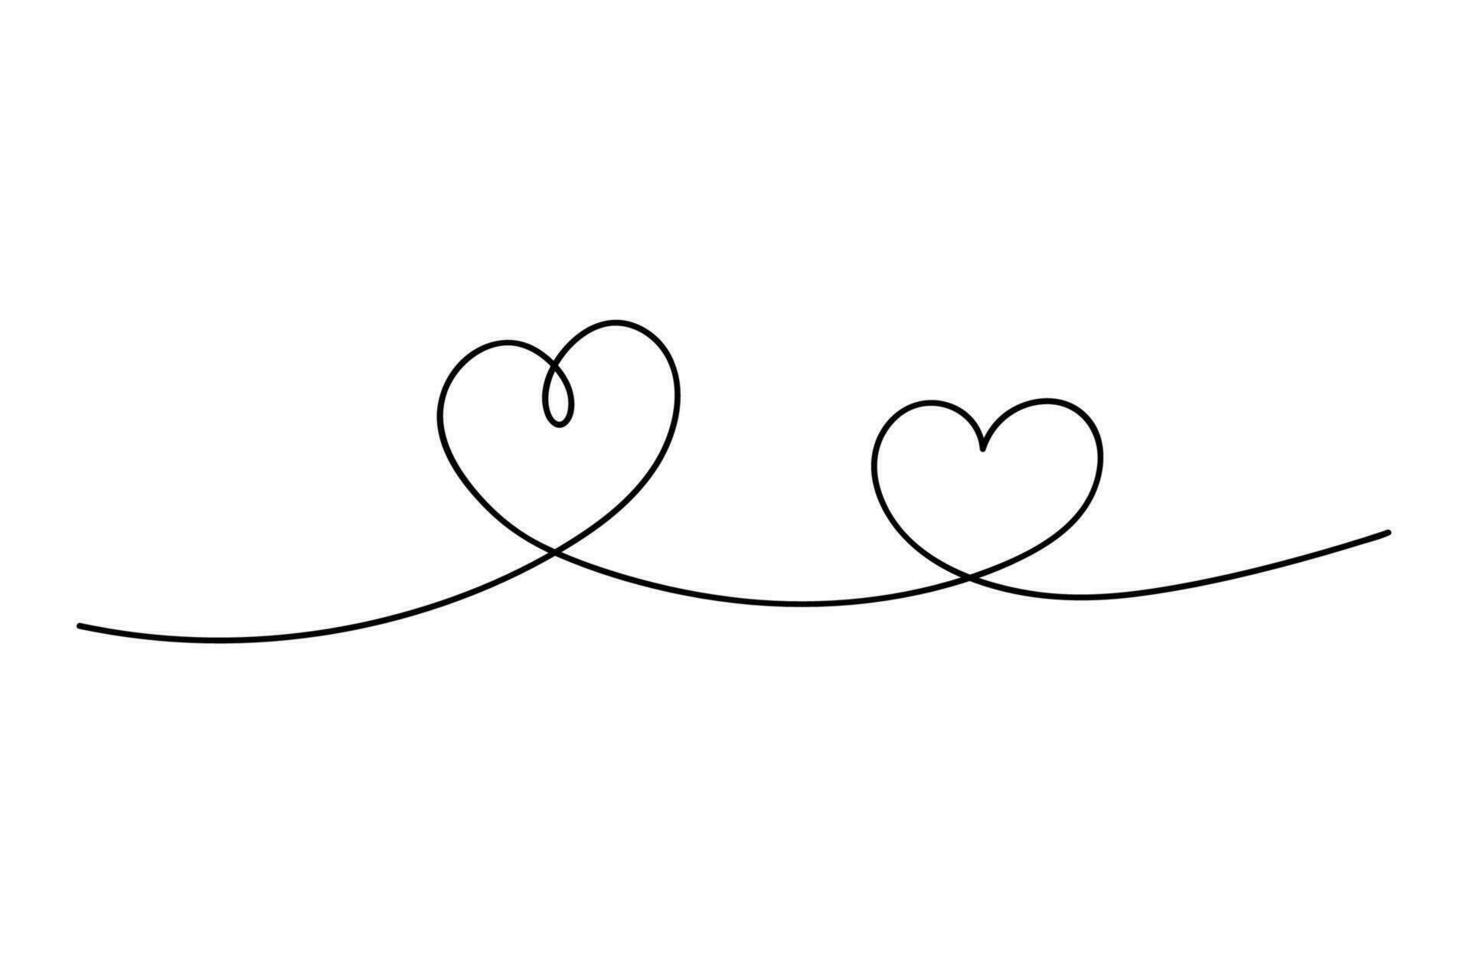 doorlopend lijn tekening. hart met zwart lijn. bewerkbare beroerte vector